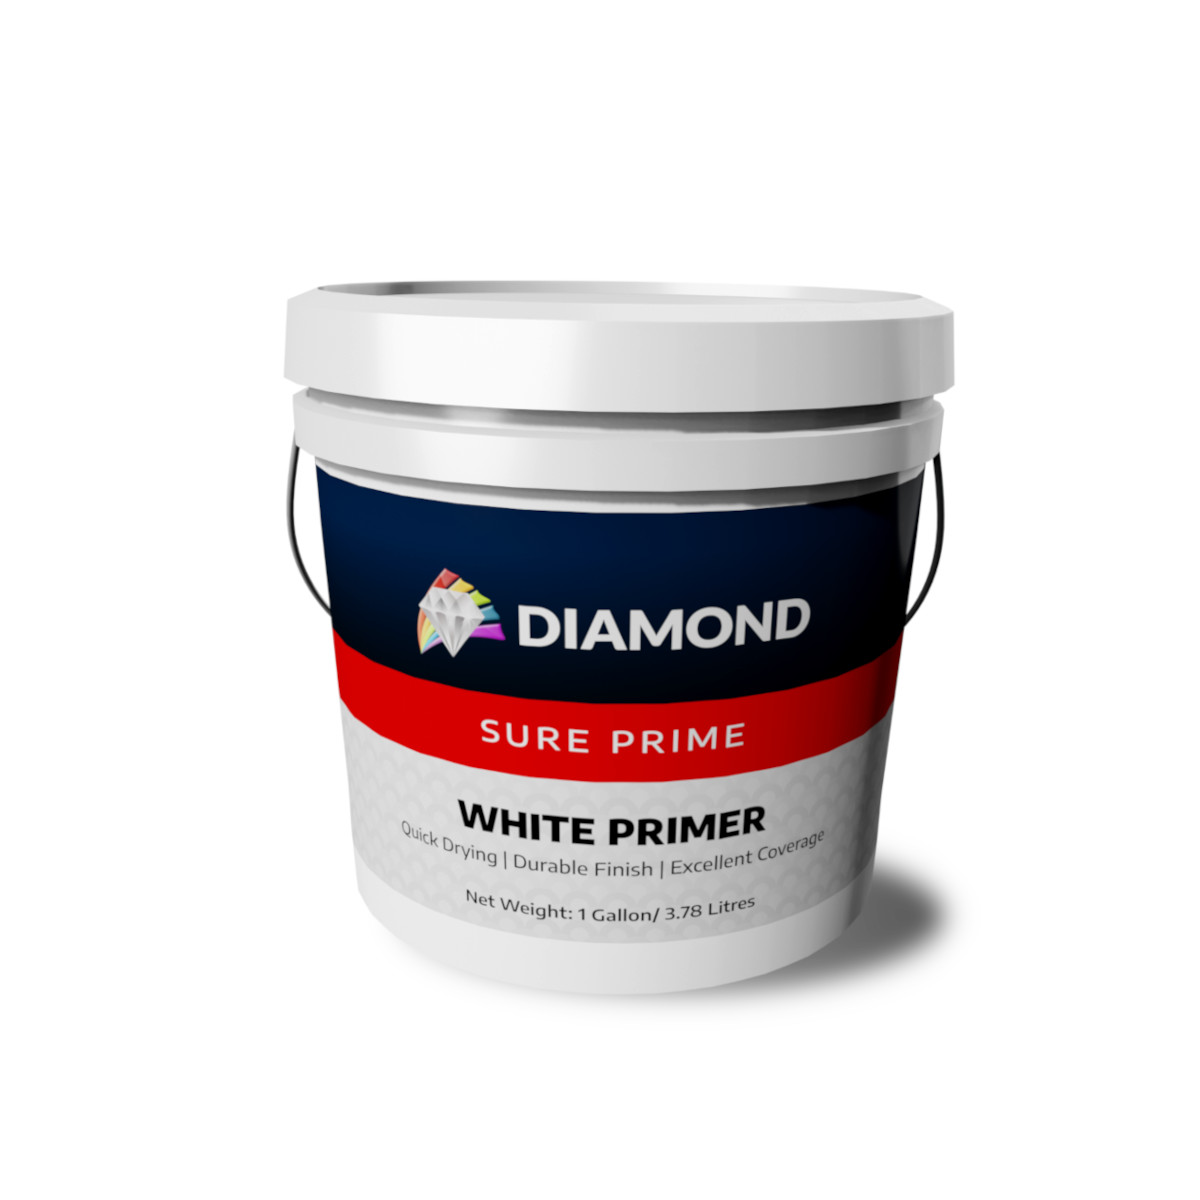 Diamond Sure Prime White Primer